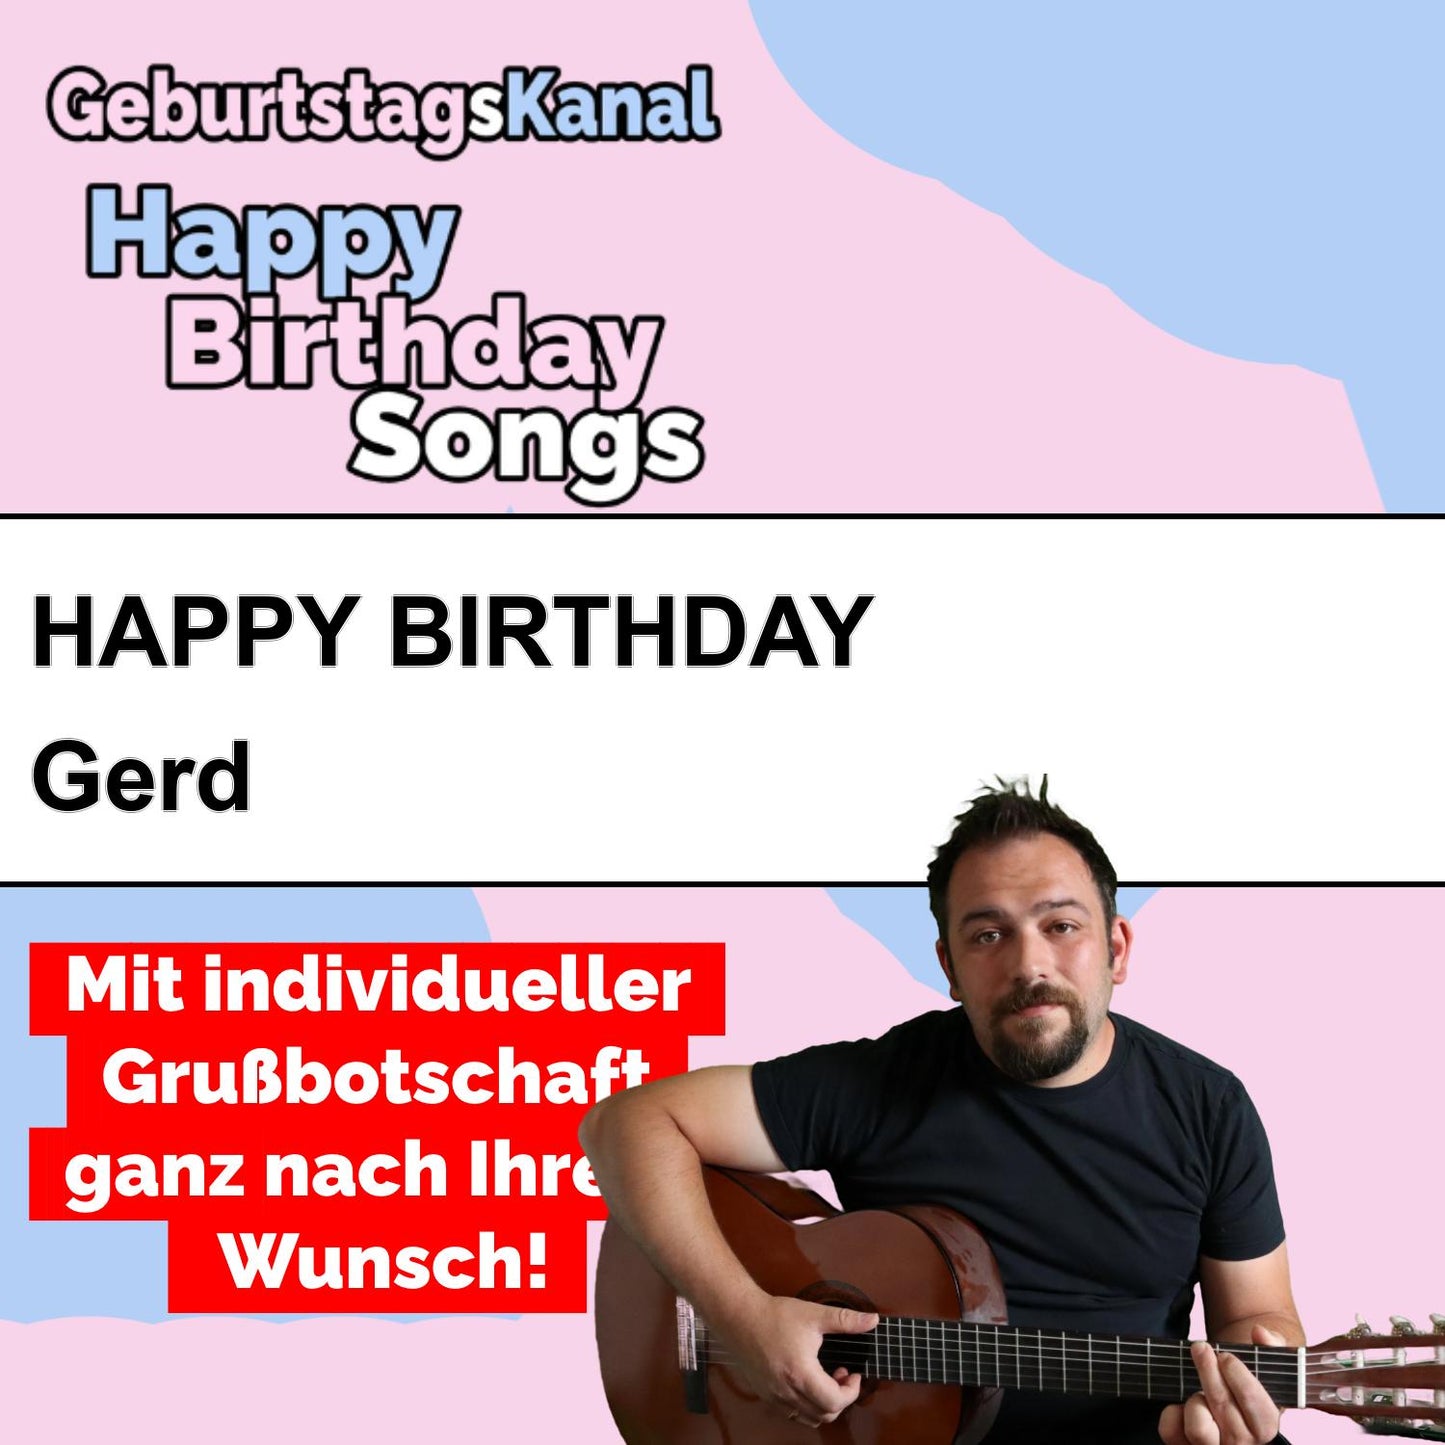 Produktbild Happy Birthday to you Gerd mit Wunschgrußbotschaft